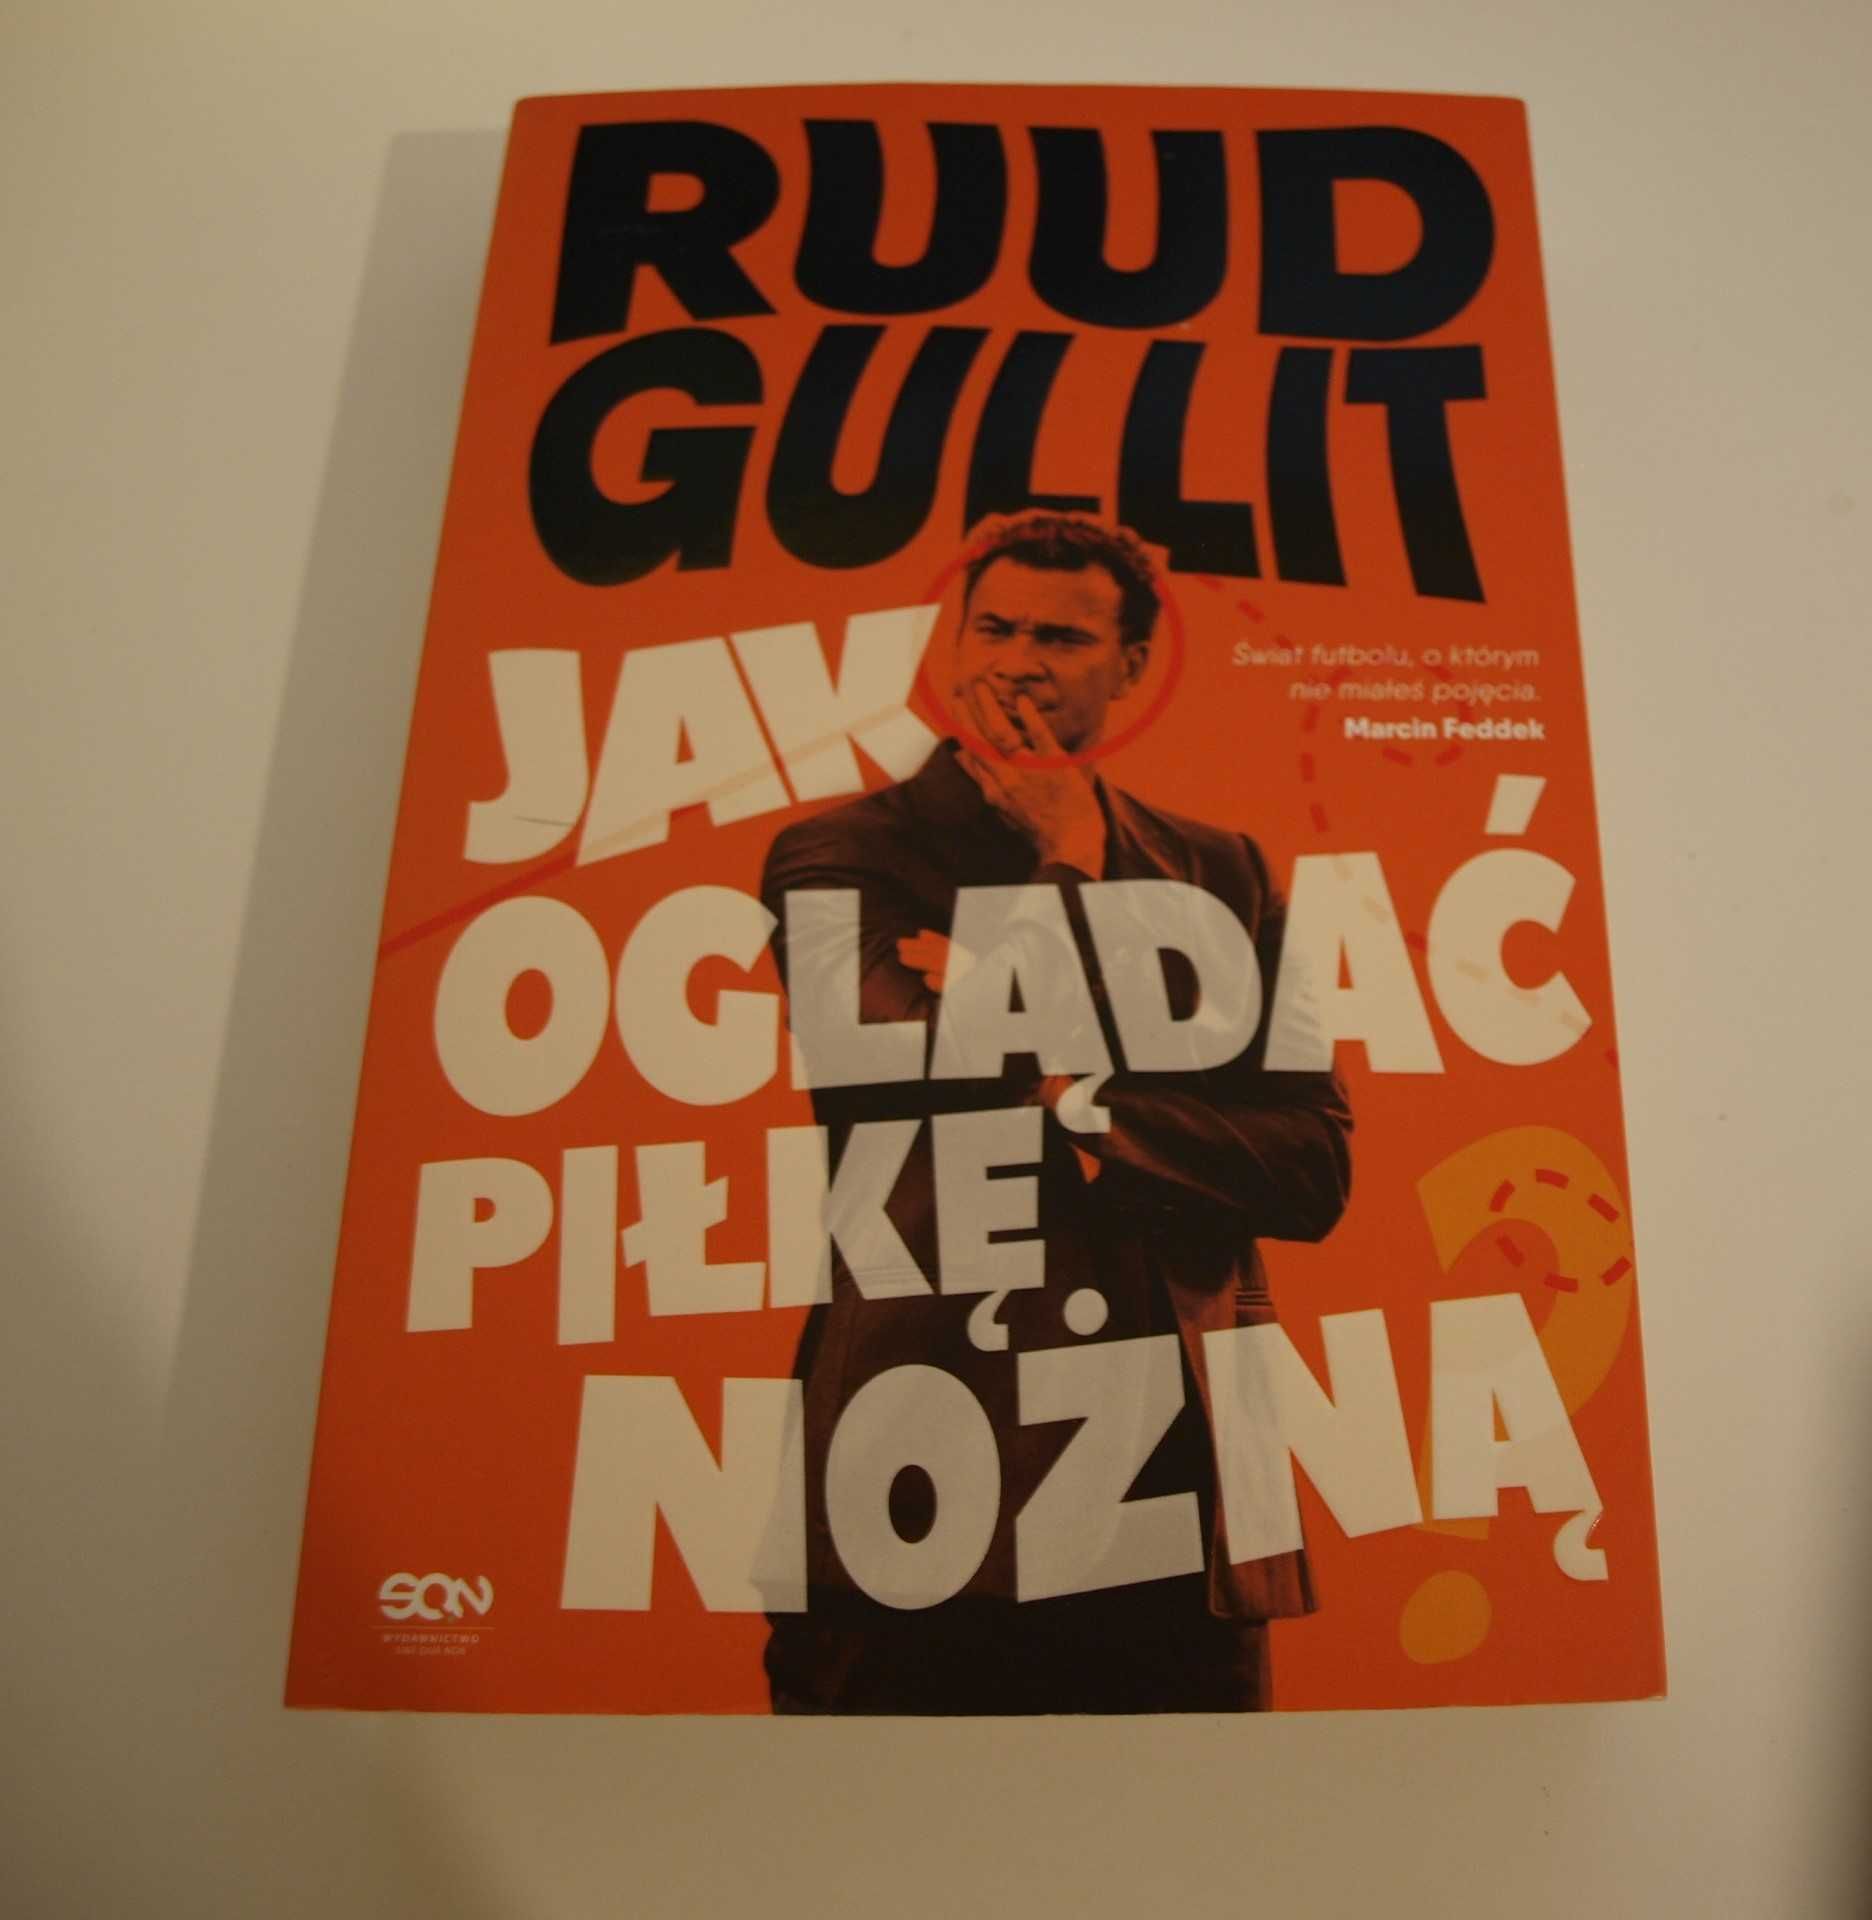 Ruud Gullit jak oglądać piłkę nożną (BYŁA RAZ CZYTANA,NIE DO KOŃCA)